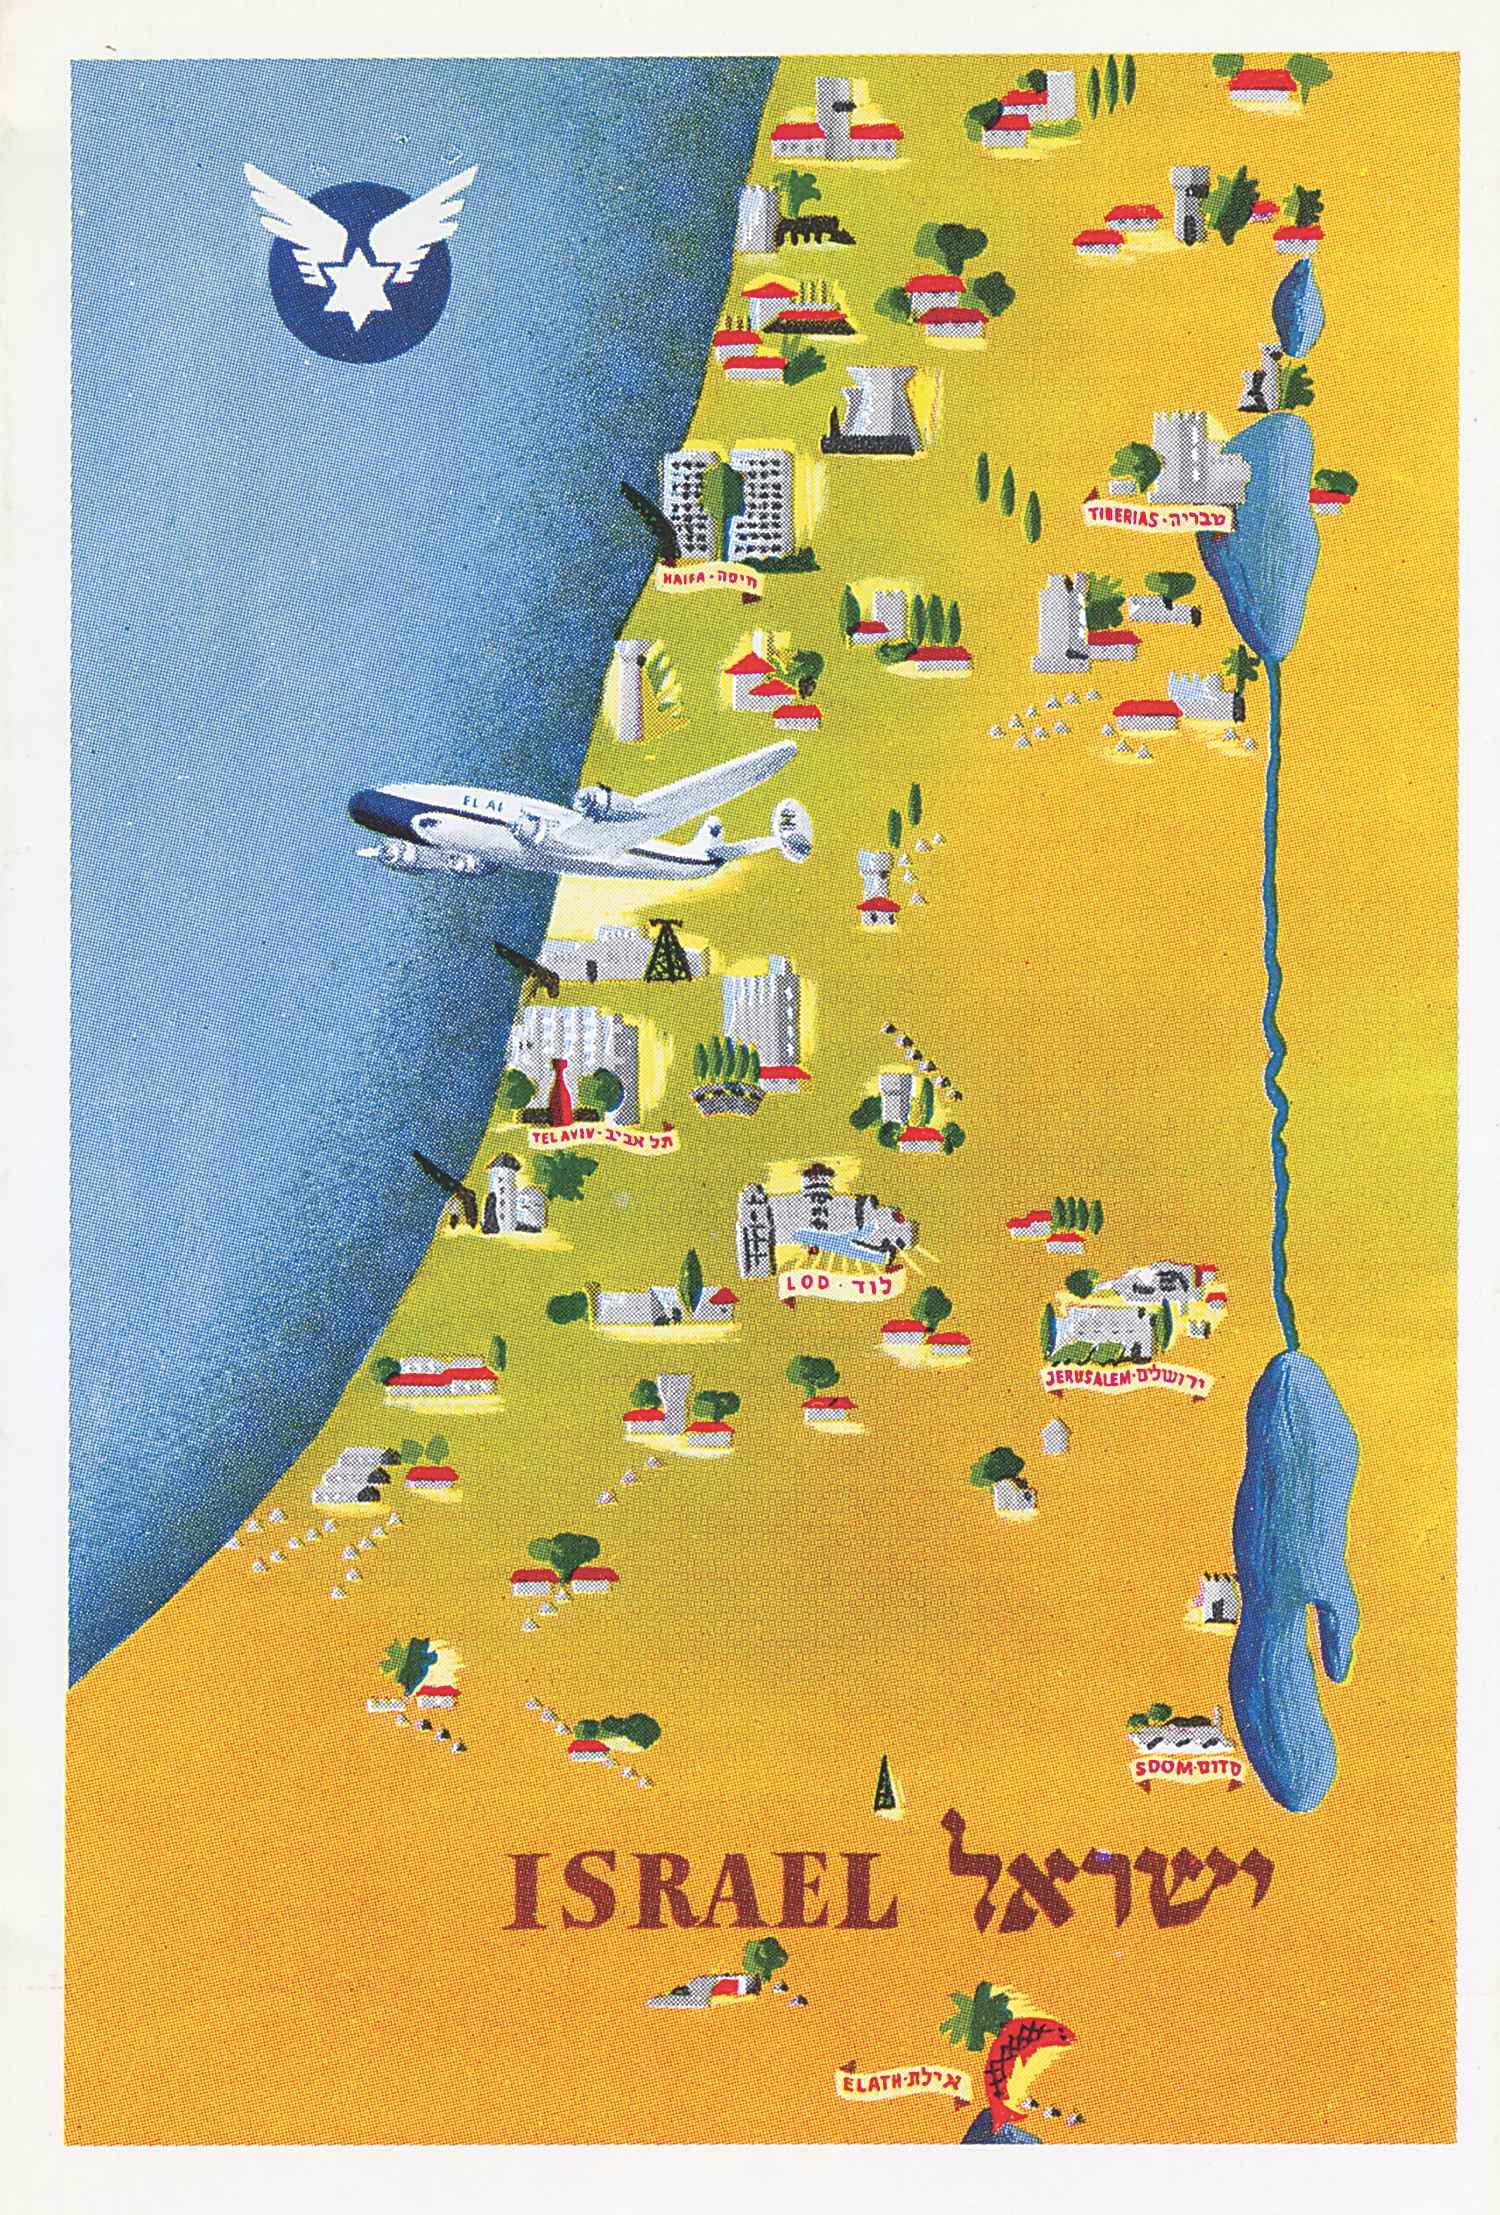 One of EL AL's earliest postcards, printed in Israel about 1952. (MG)